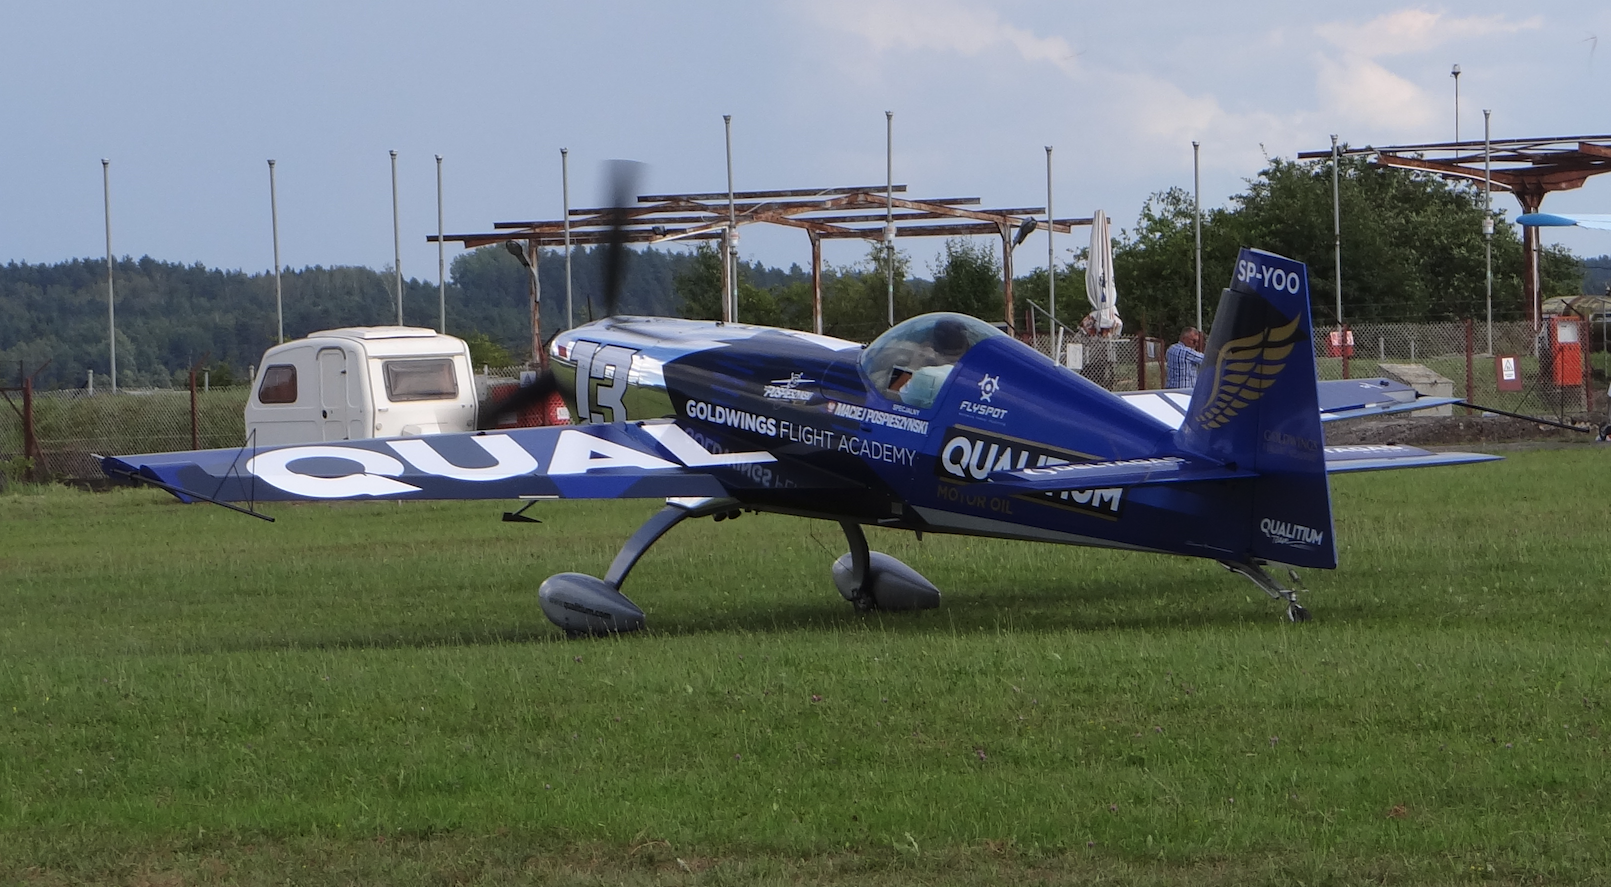 Maciej Pospieszyński samolot Extra 330 SC SP-YOO. Mazury Air Show 2018. Zdjęcie Karol Placha Hetman